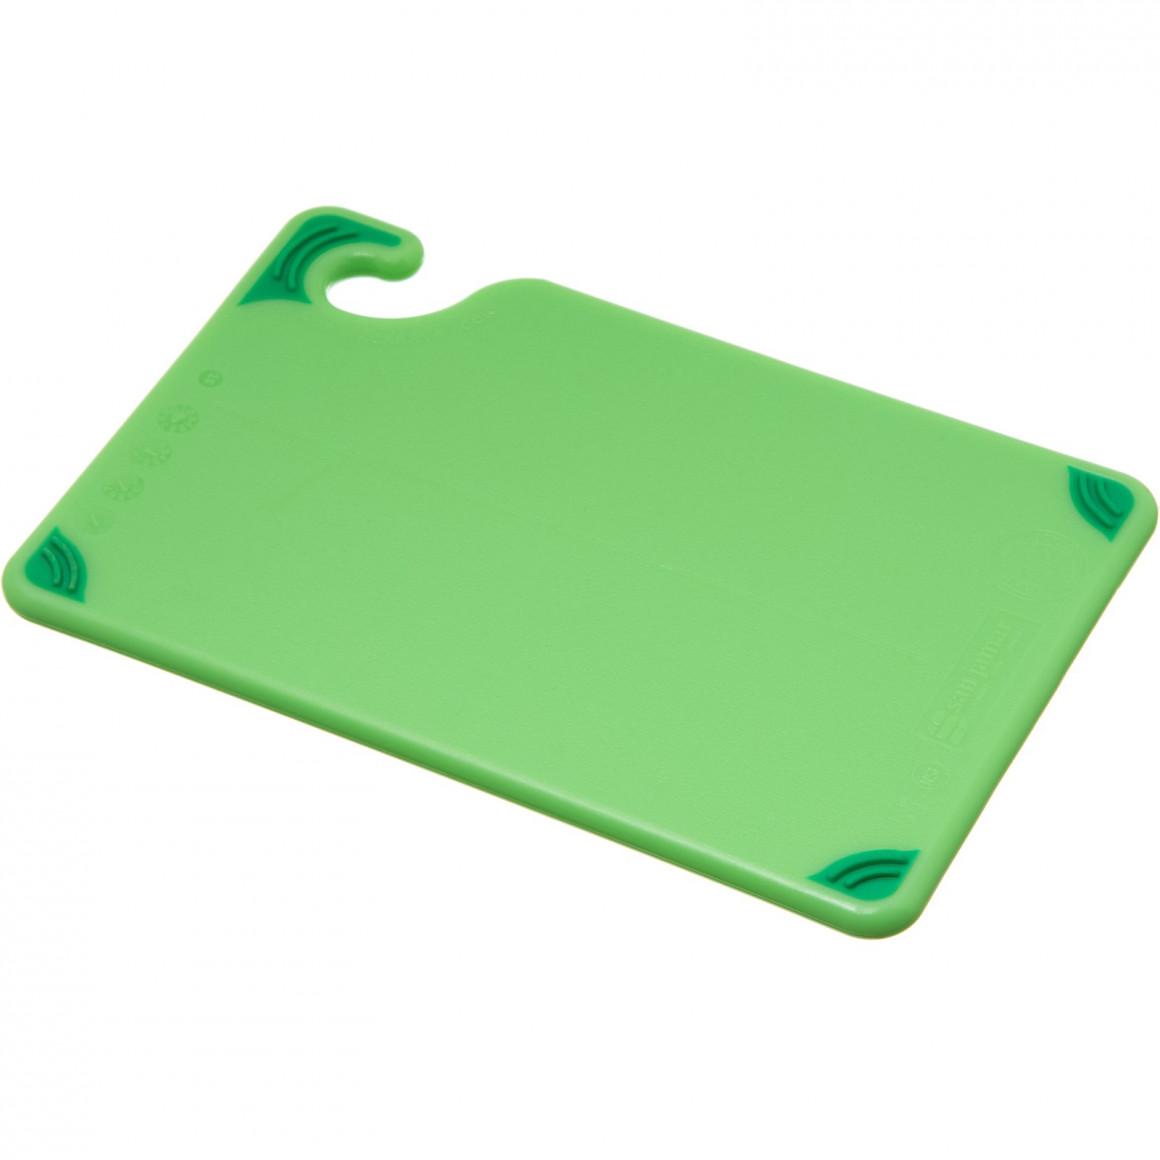 Saf-T-Grip Bar Board - Green